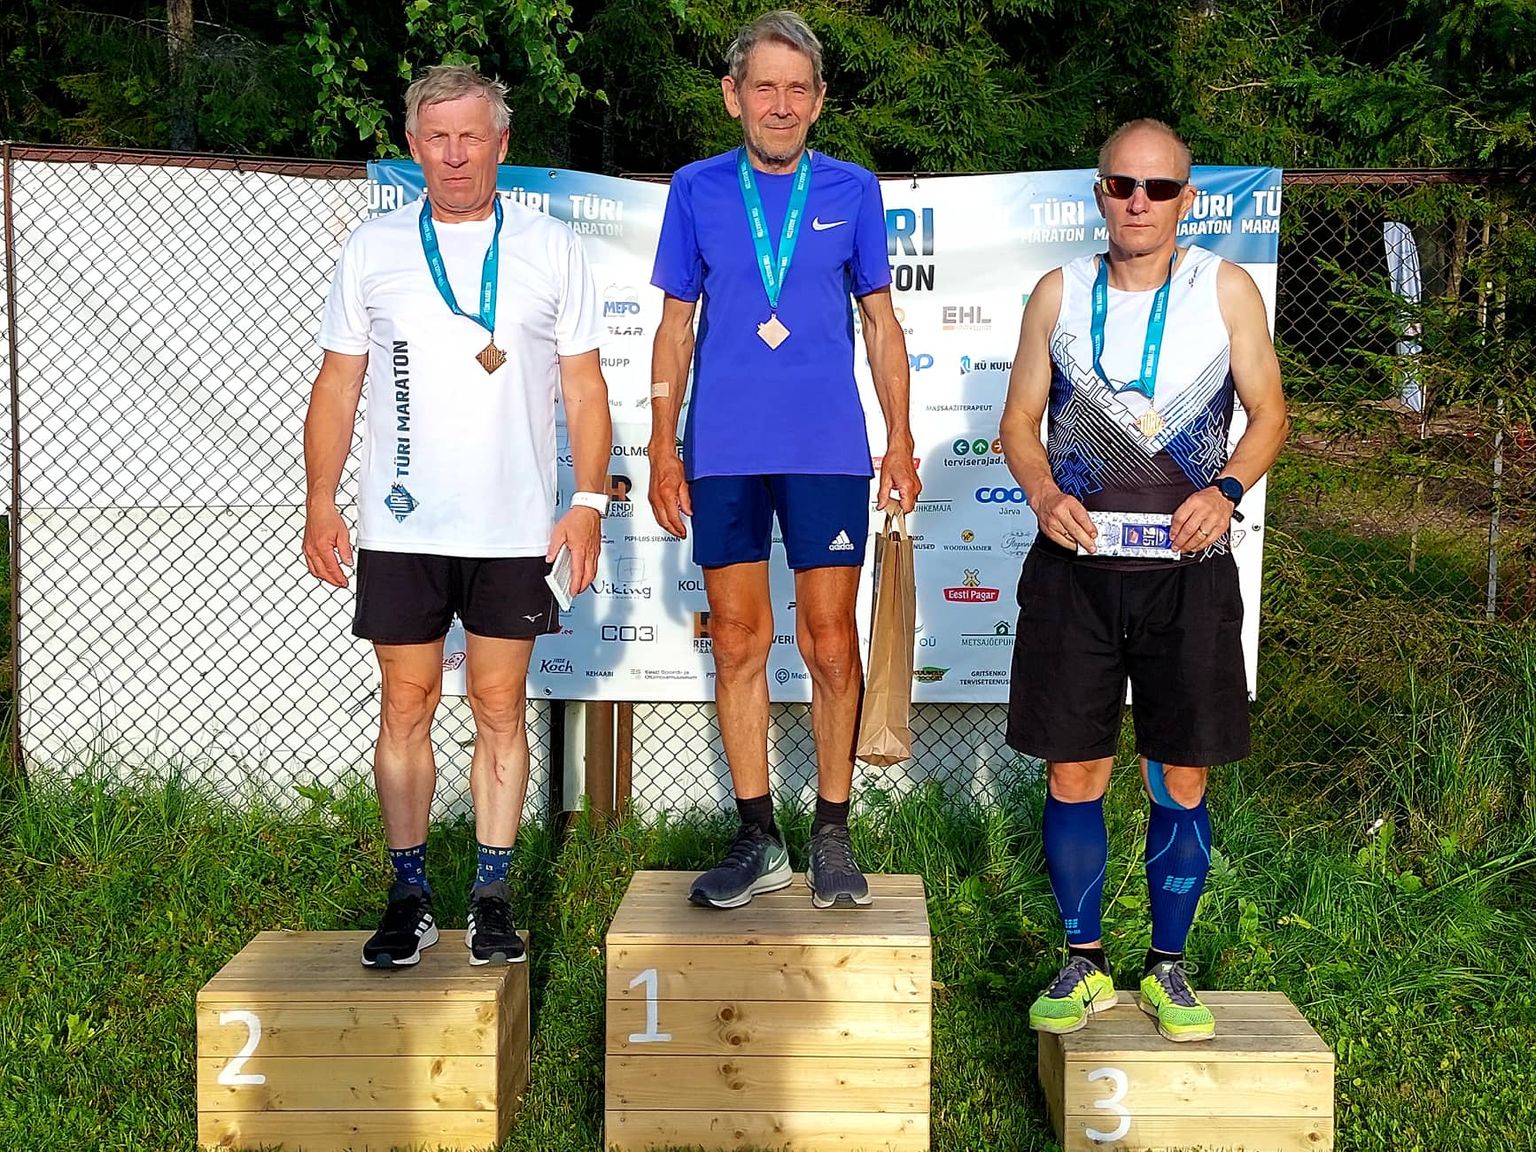 5,2 kilomeetrit läbinud kõige kogenumad seeniorsportlased olid kuuendal etapil: (vasakult) Tiit Kivisild, Jaan Lomp ja Lauri Lipp.